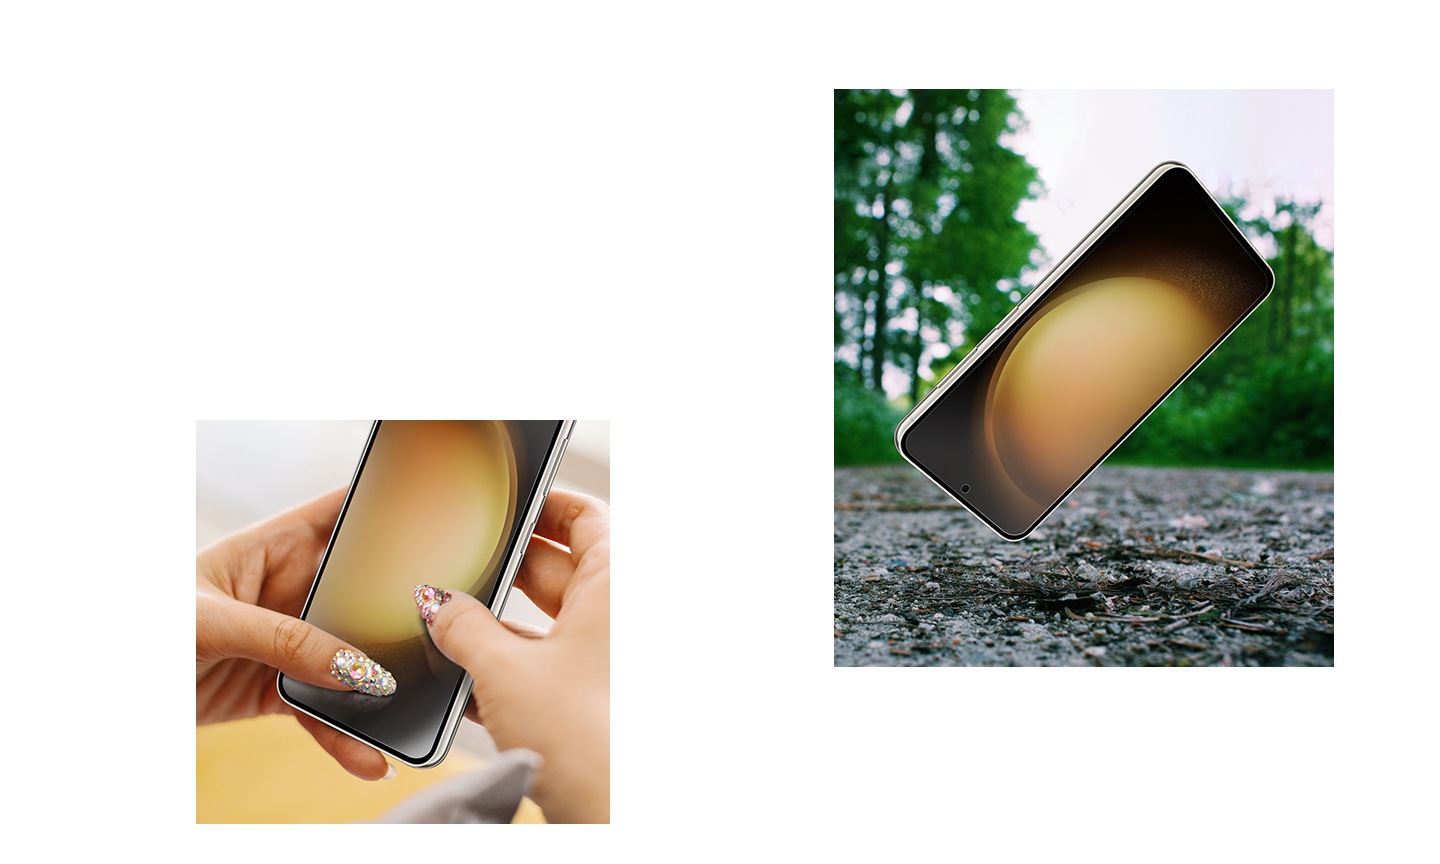 Perangkat Galaxy S23 yang menggunakan Screen Protector diletakkan di permukaan yang kasar. Dua tangan memegang ponsel Galaxy S23 yang menggunakan Screen Protector dan kukunya menggores layar ponsel untuk menyoroti lapisan antigores pada Screen Protector.